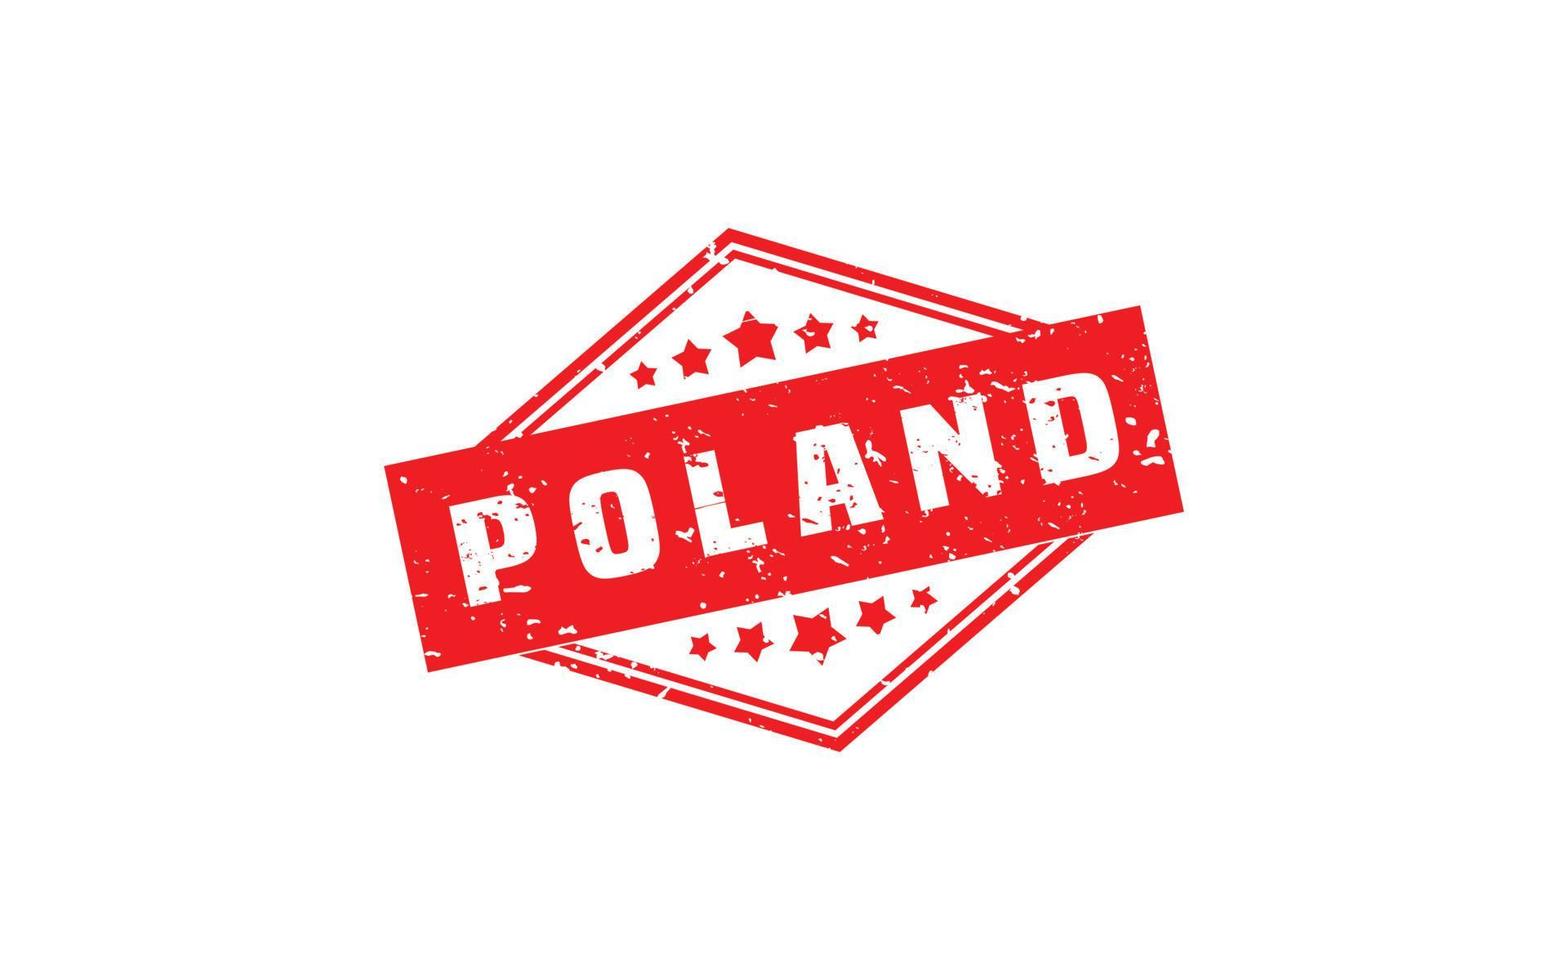 Polen Stempelgummi mit Grunge-Stil auf weißem Hintergrund vektor